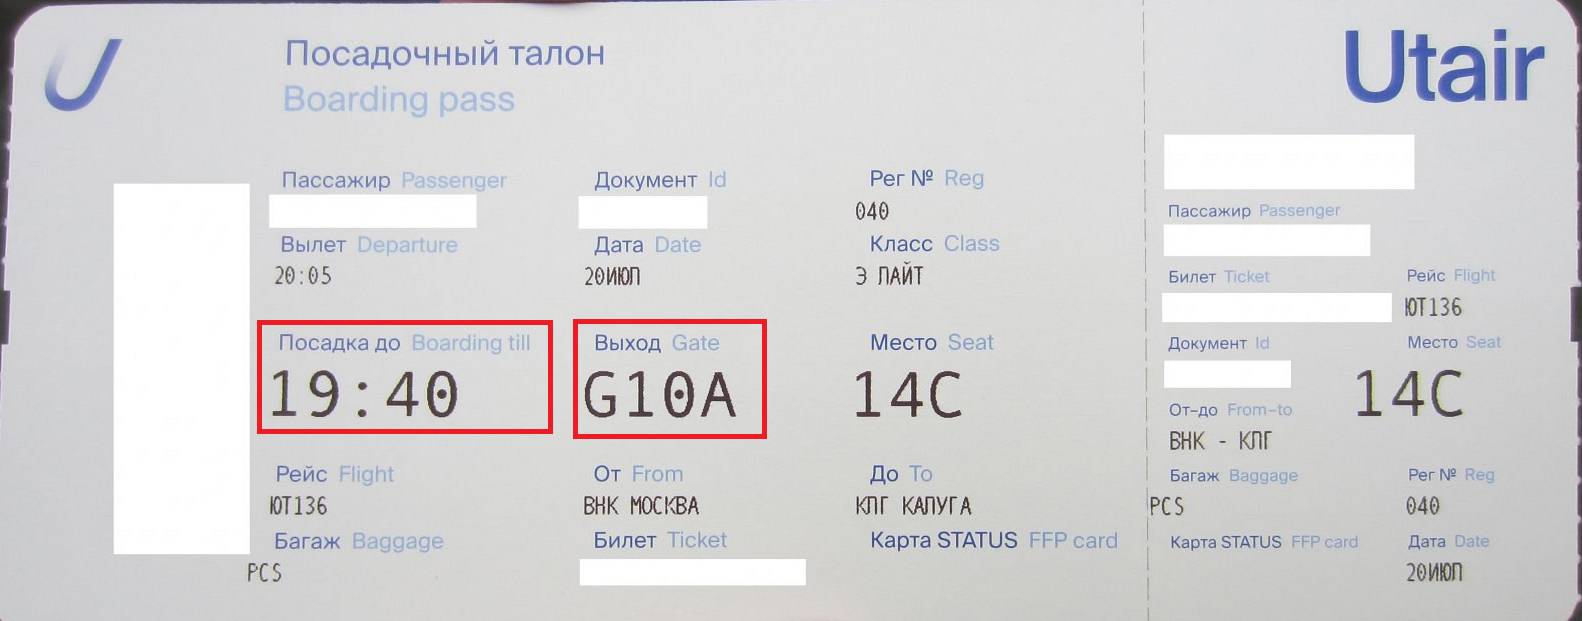 где в билете на самолет указано место